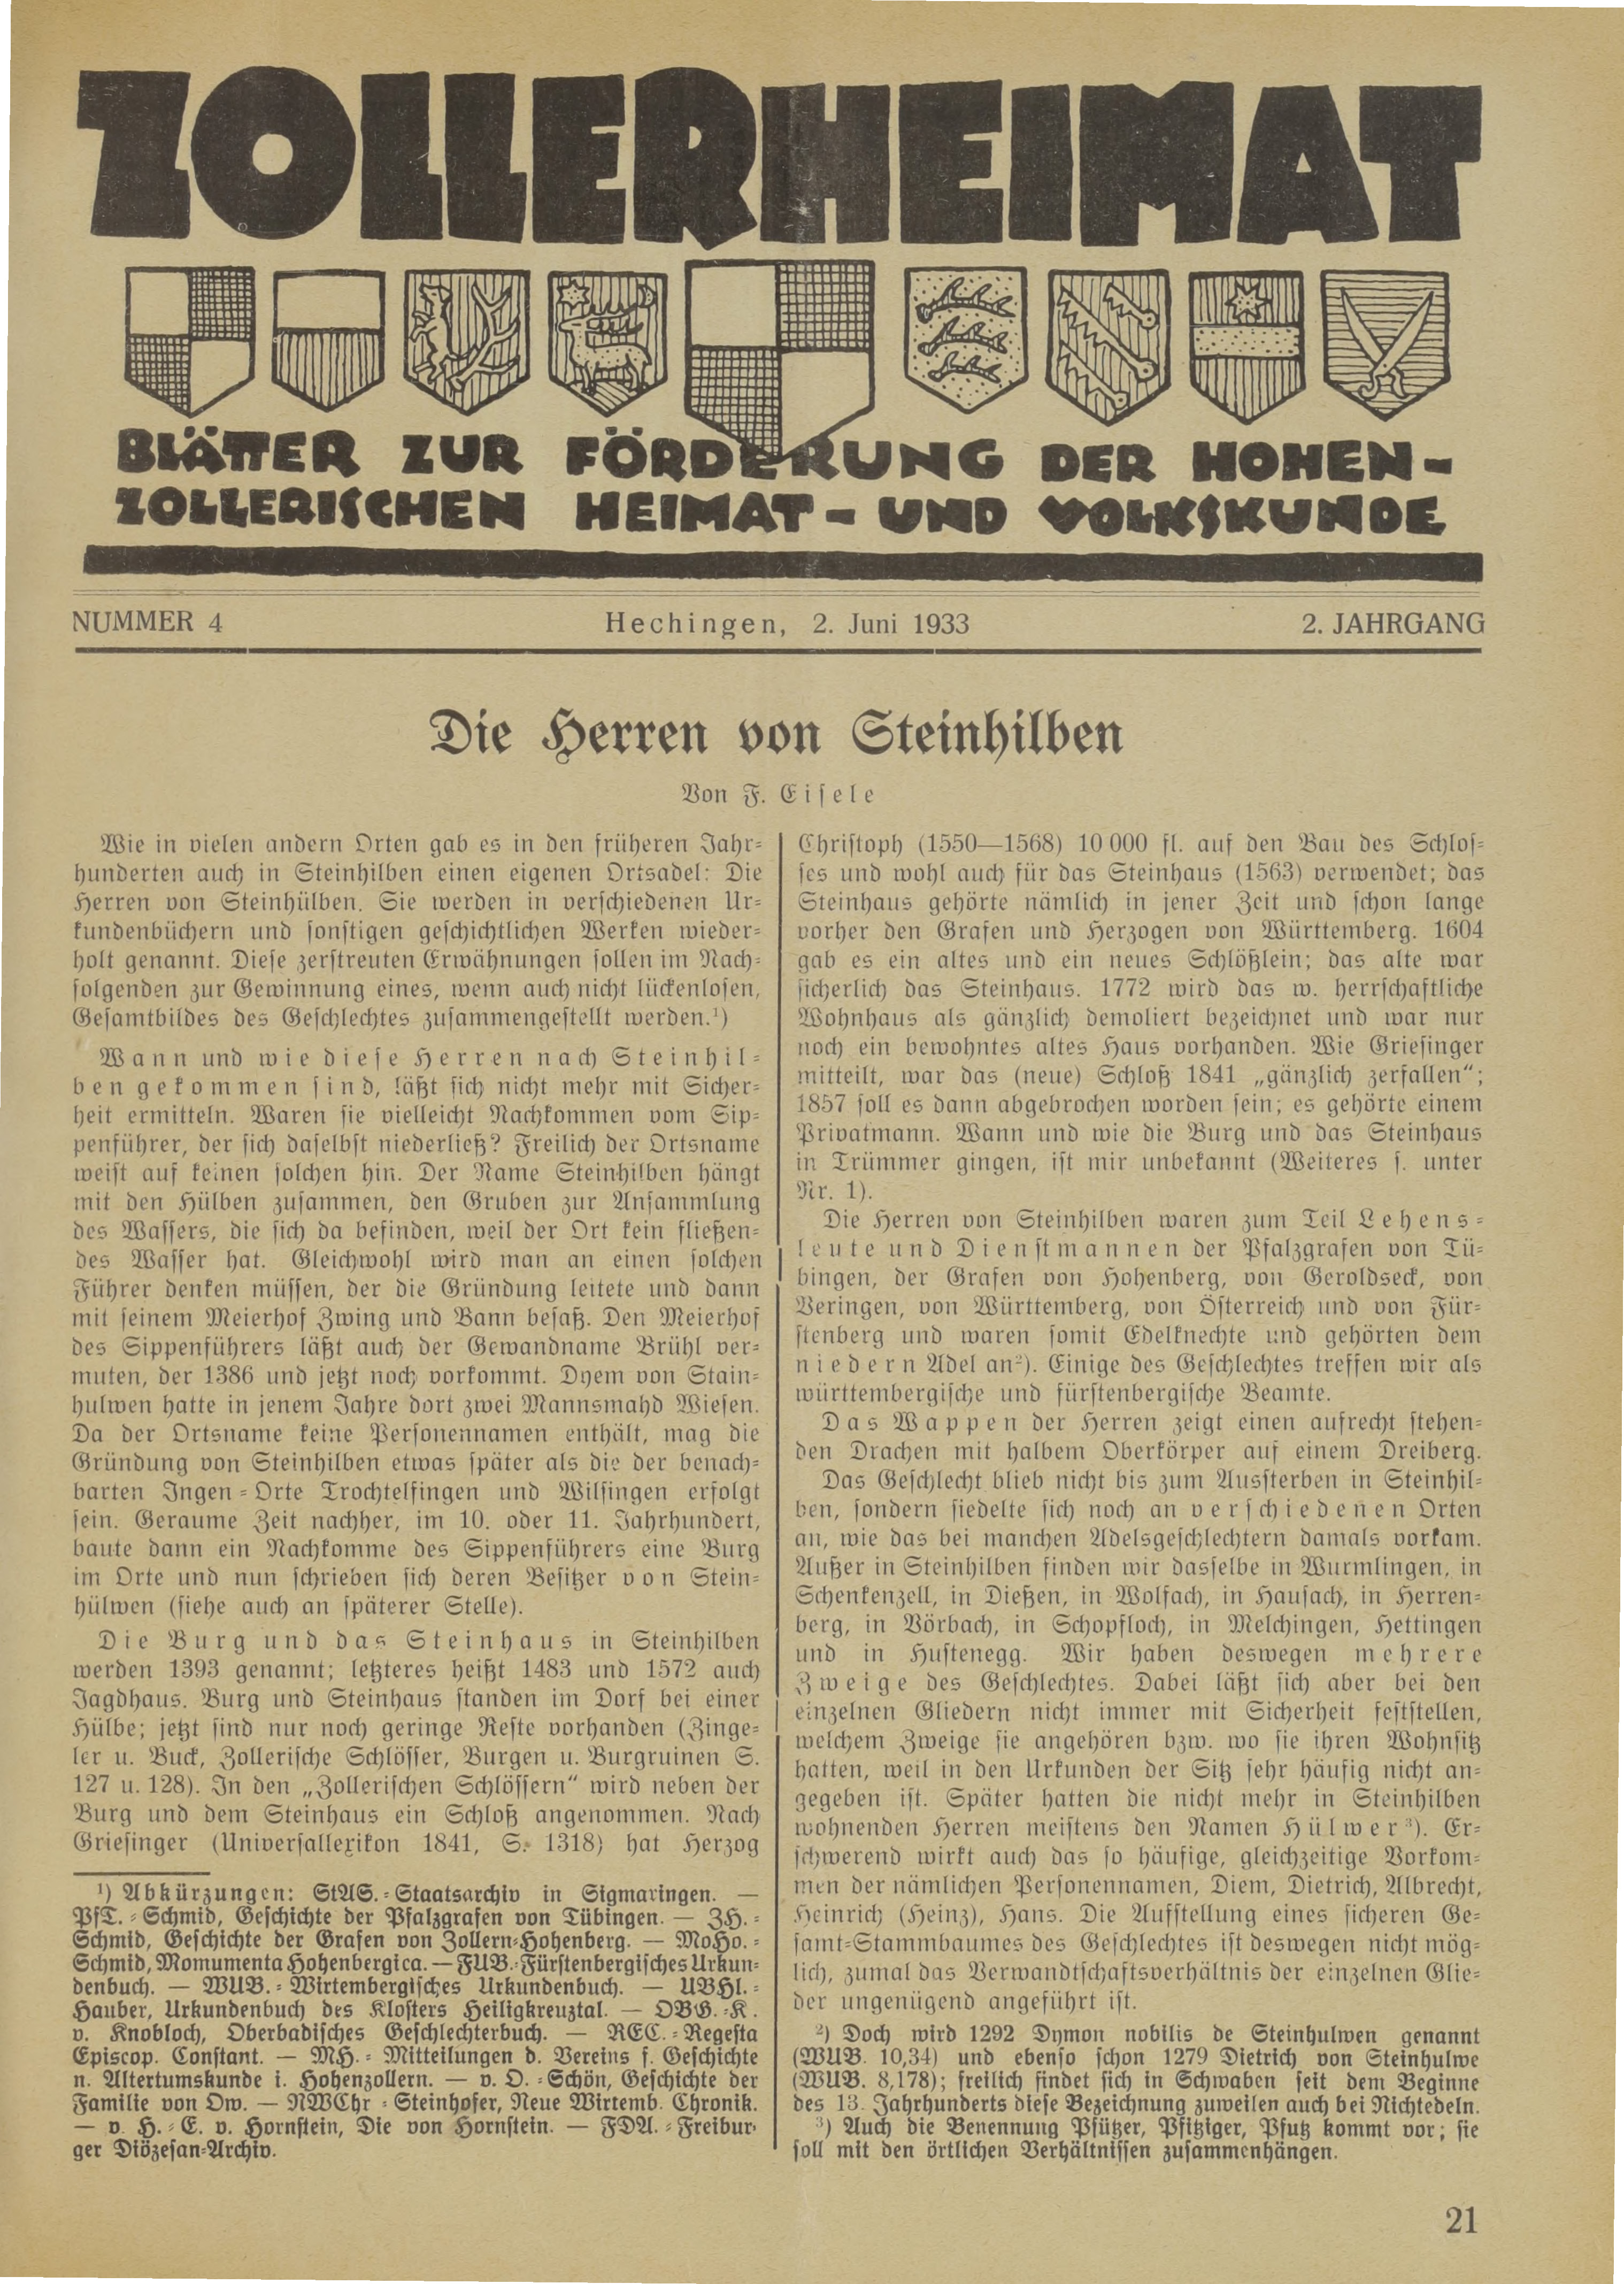                     Ansehen Bd. 2 Nr. 4 (1933): Zollerheimat
                